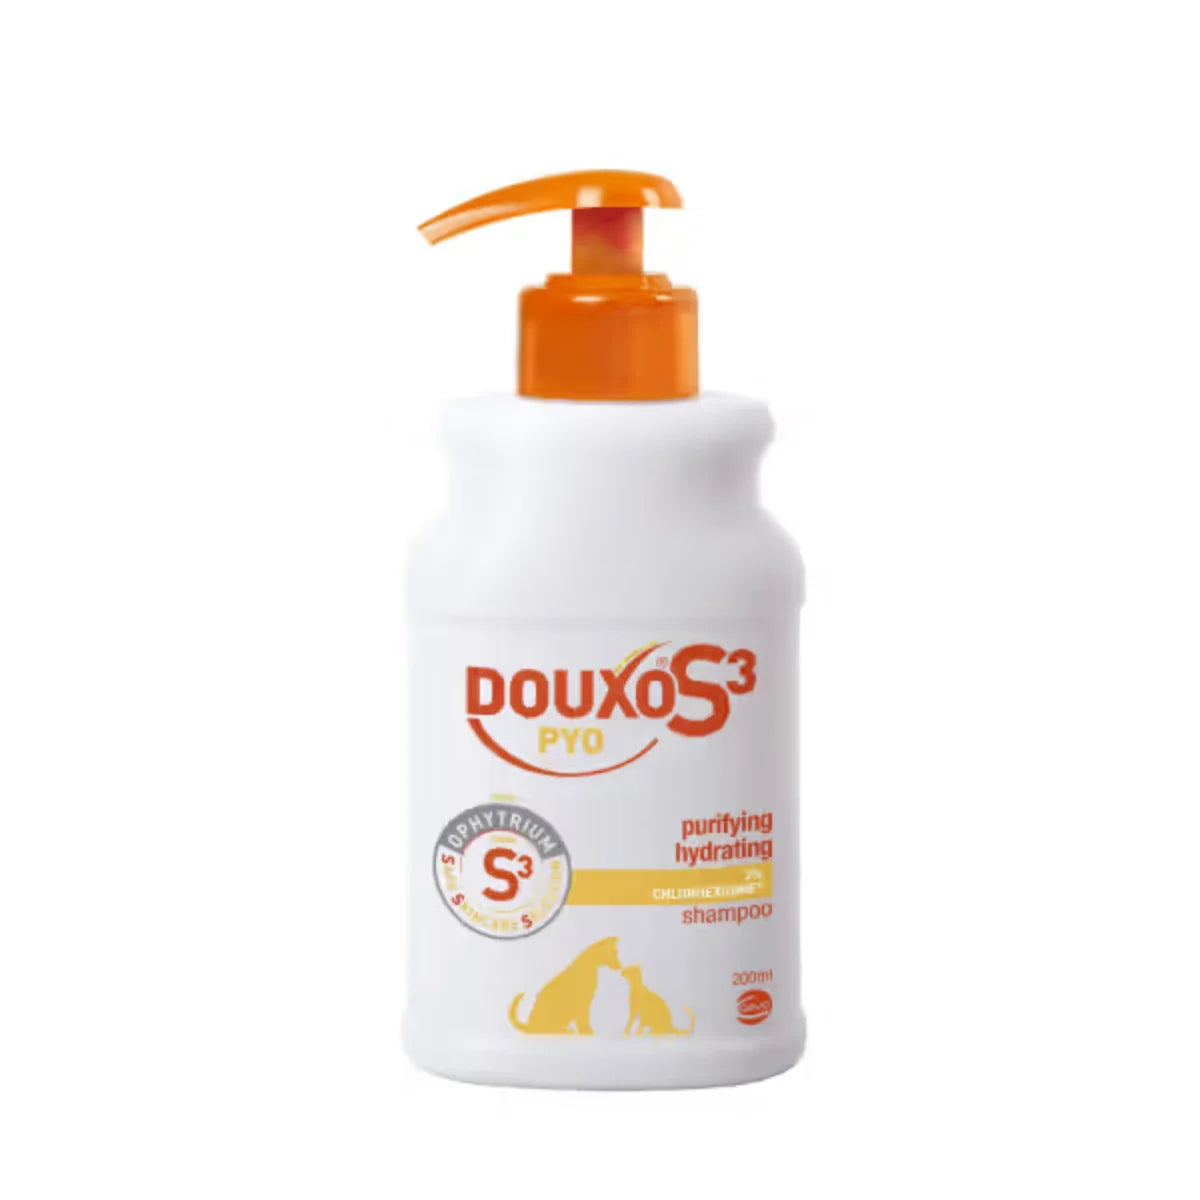 DOUXO S3 - PYO Shampoo 200ml